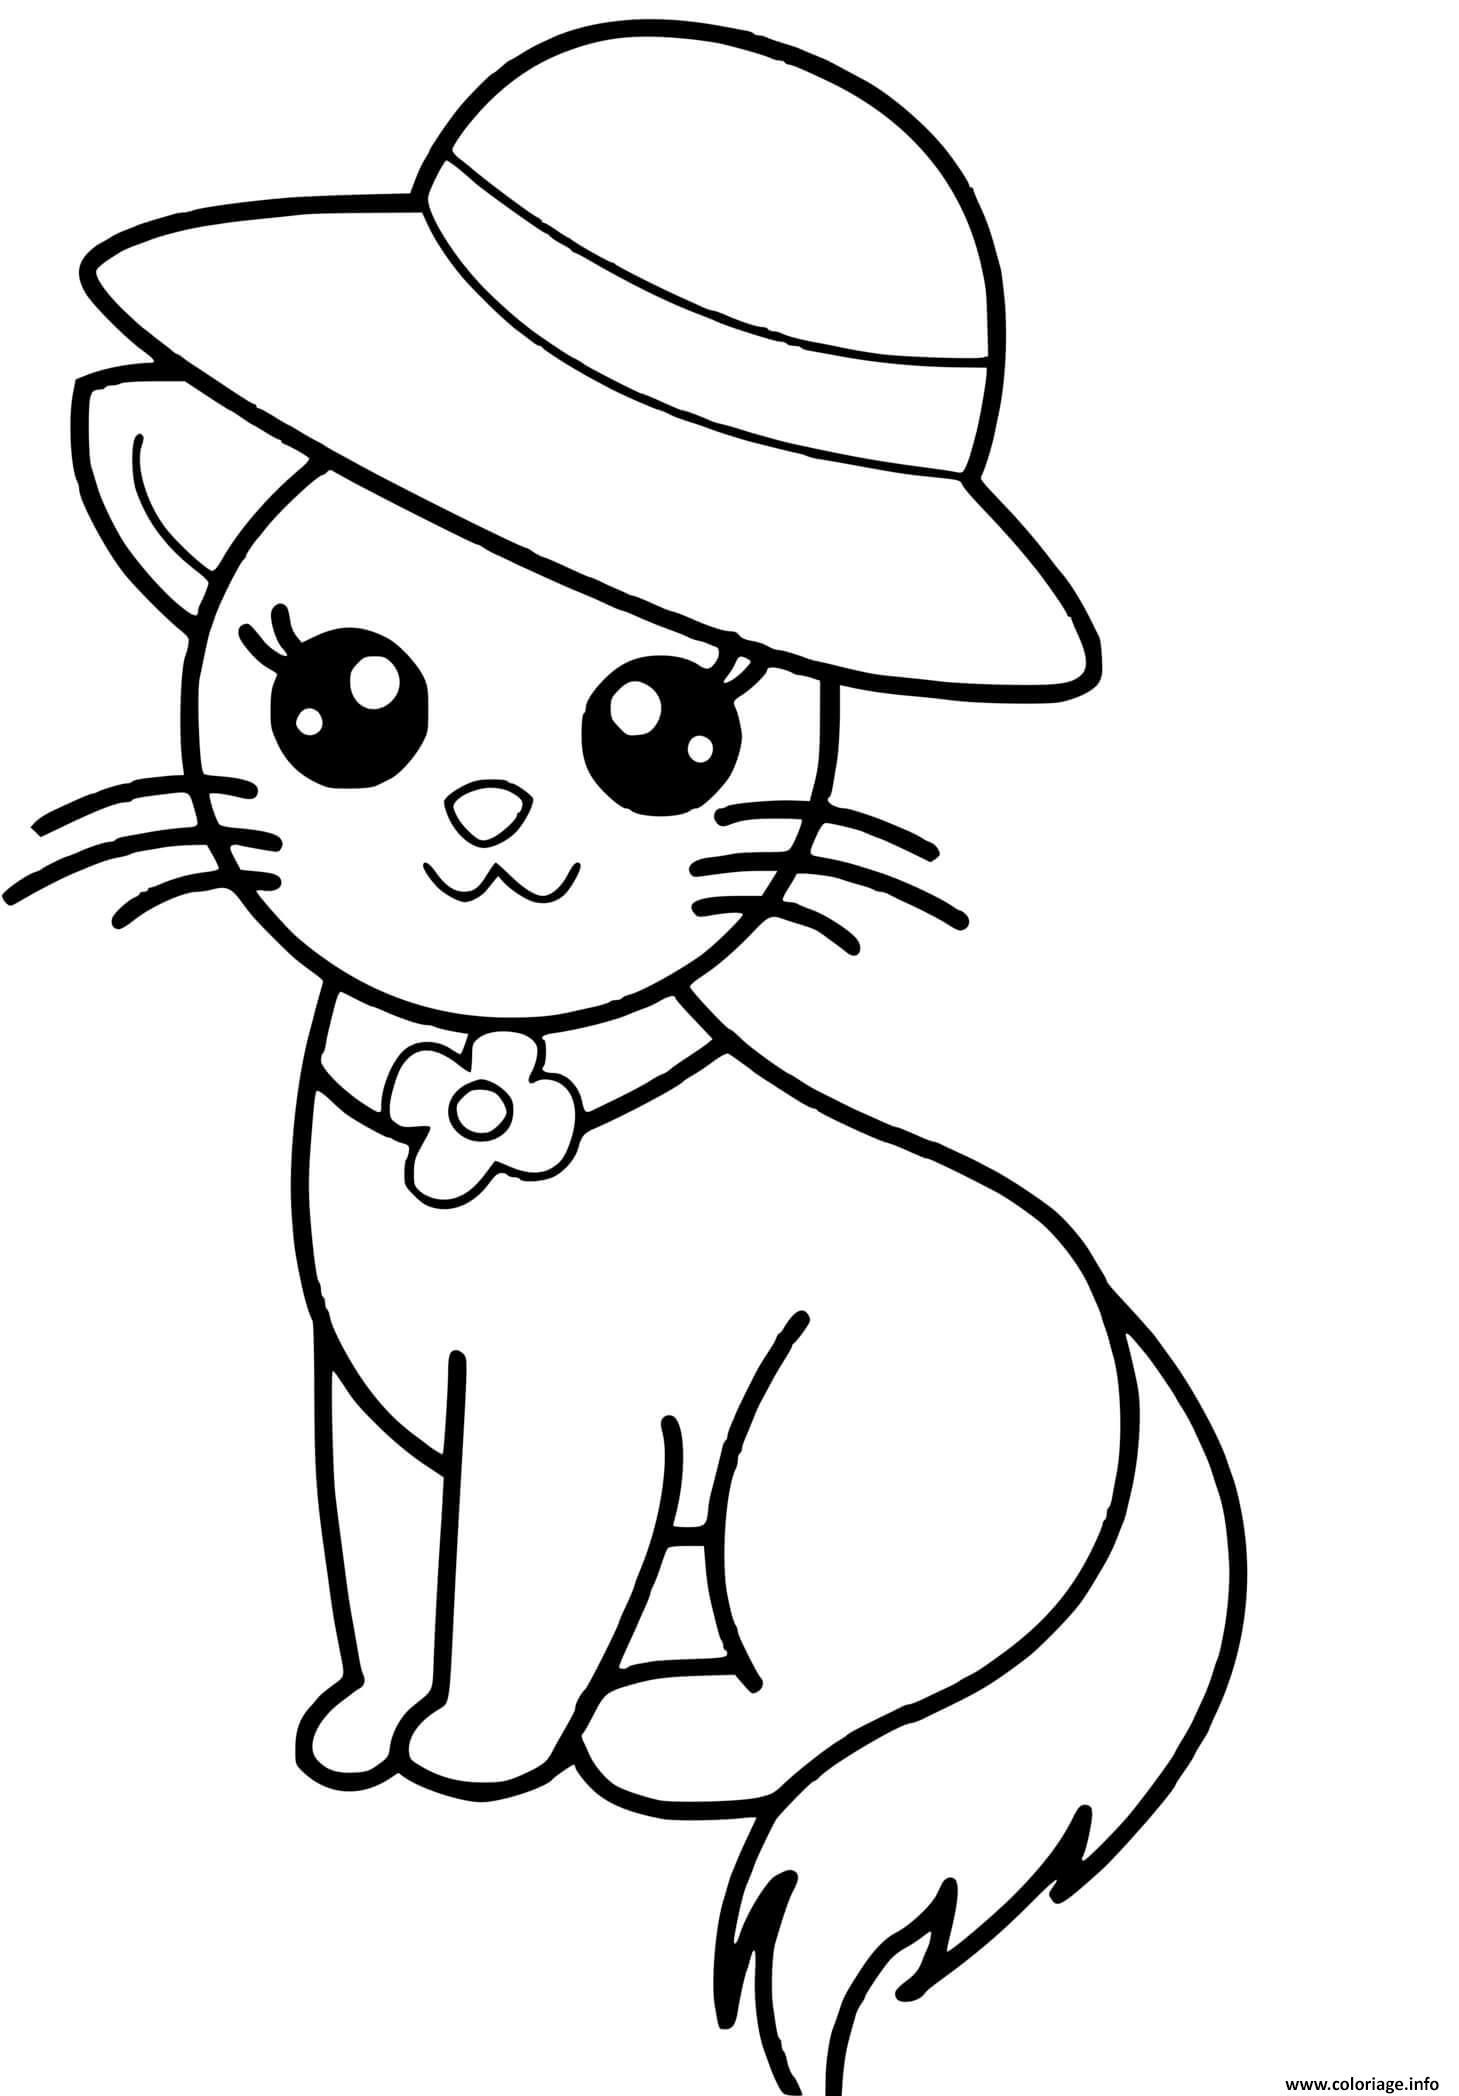 Dessin chaton kawaii mignon avec chapeau elegant Coloriage Gratuit à Imprimer